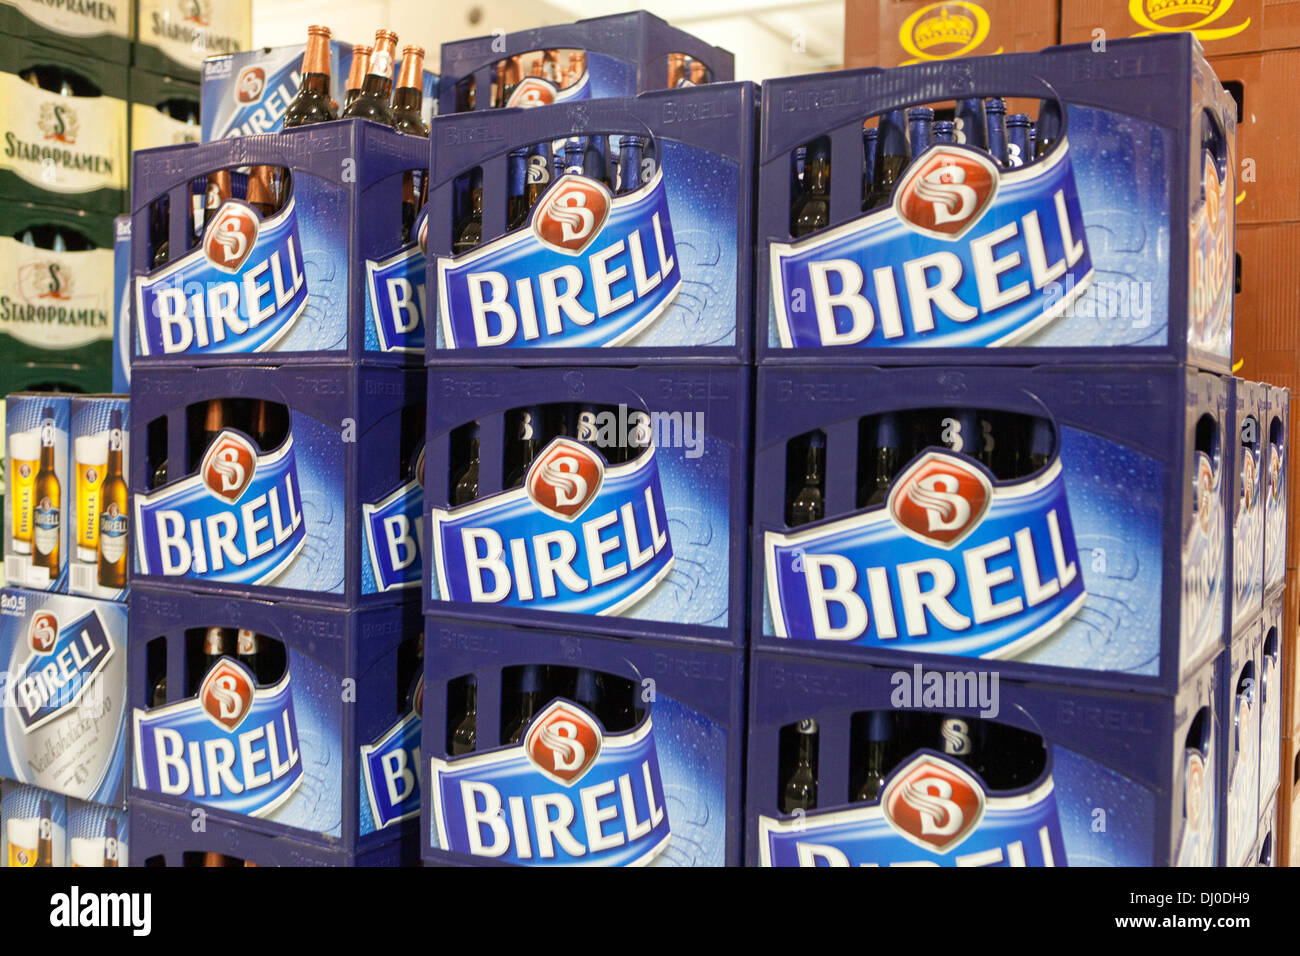 Einkaufen in Kaufhäusern, Geschäften und Supermärkten, alkoholfreie Bier Birell Kiste anmelden Shop, Tschechische Republik Stockfoto